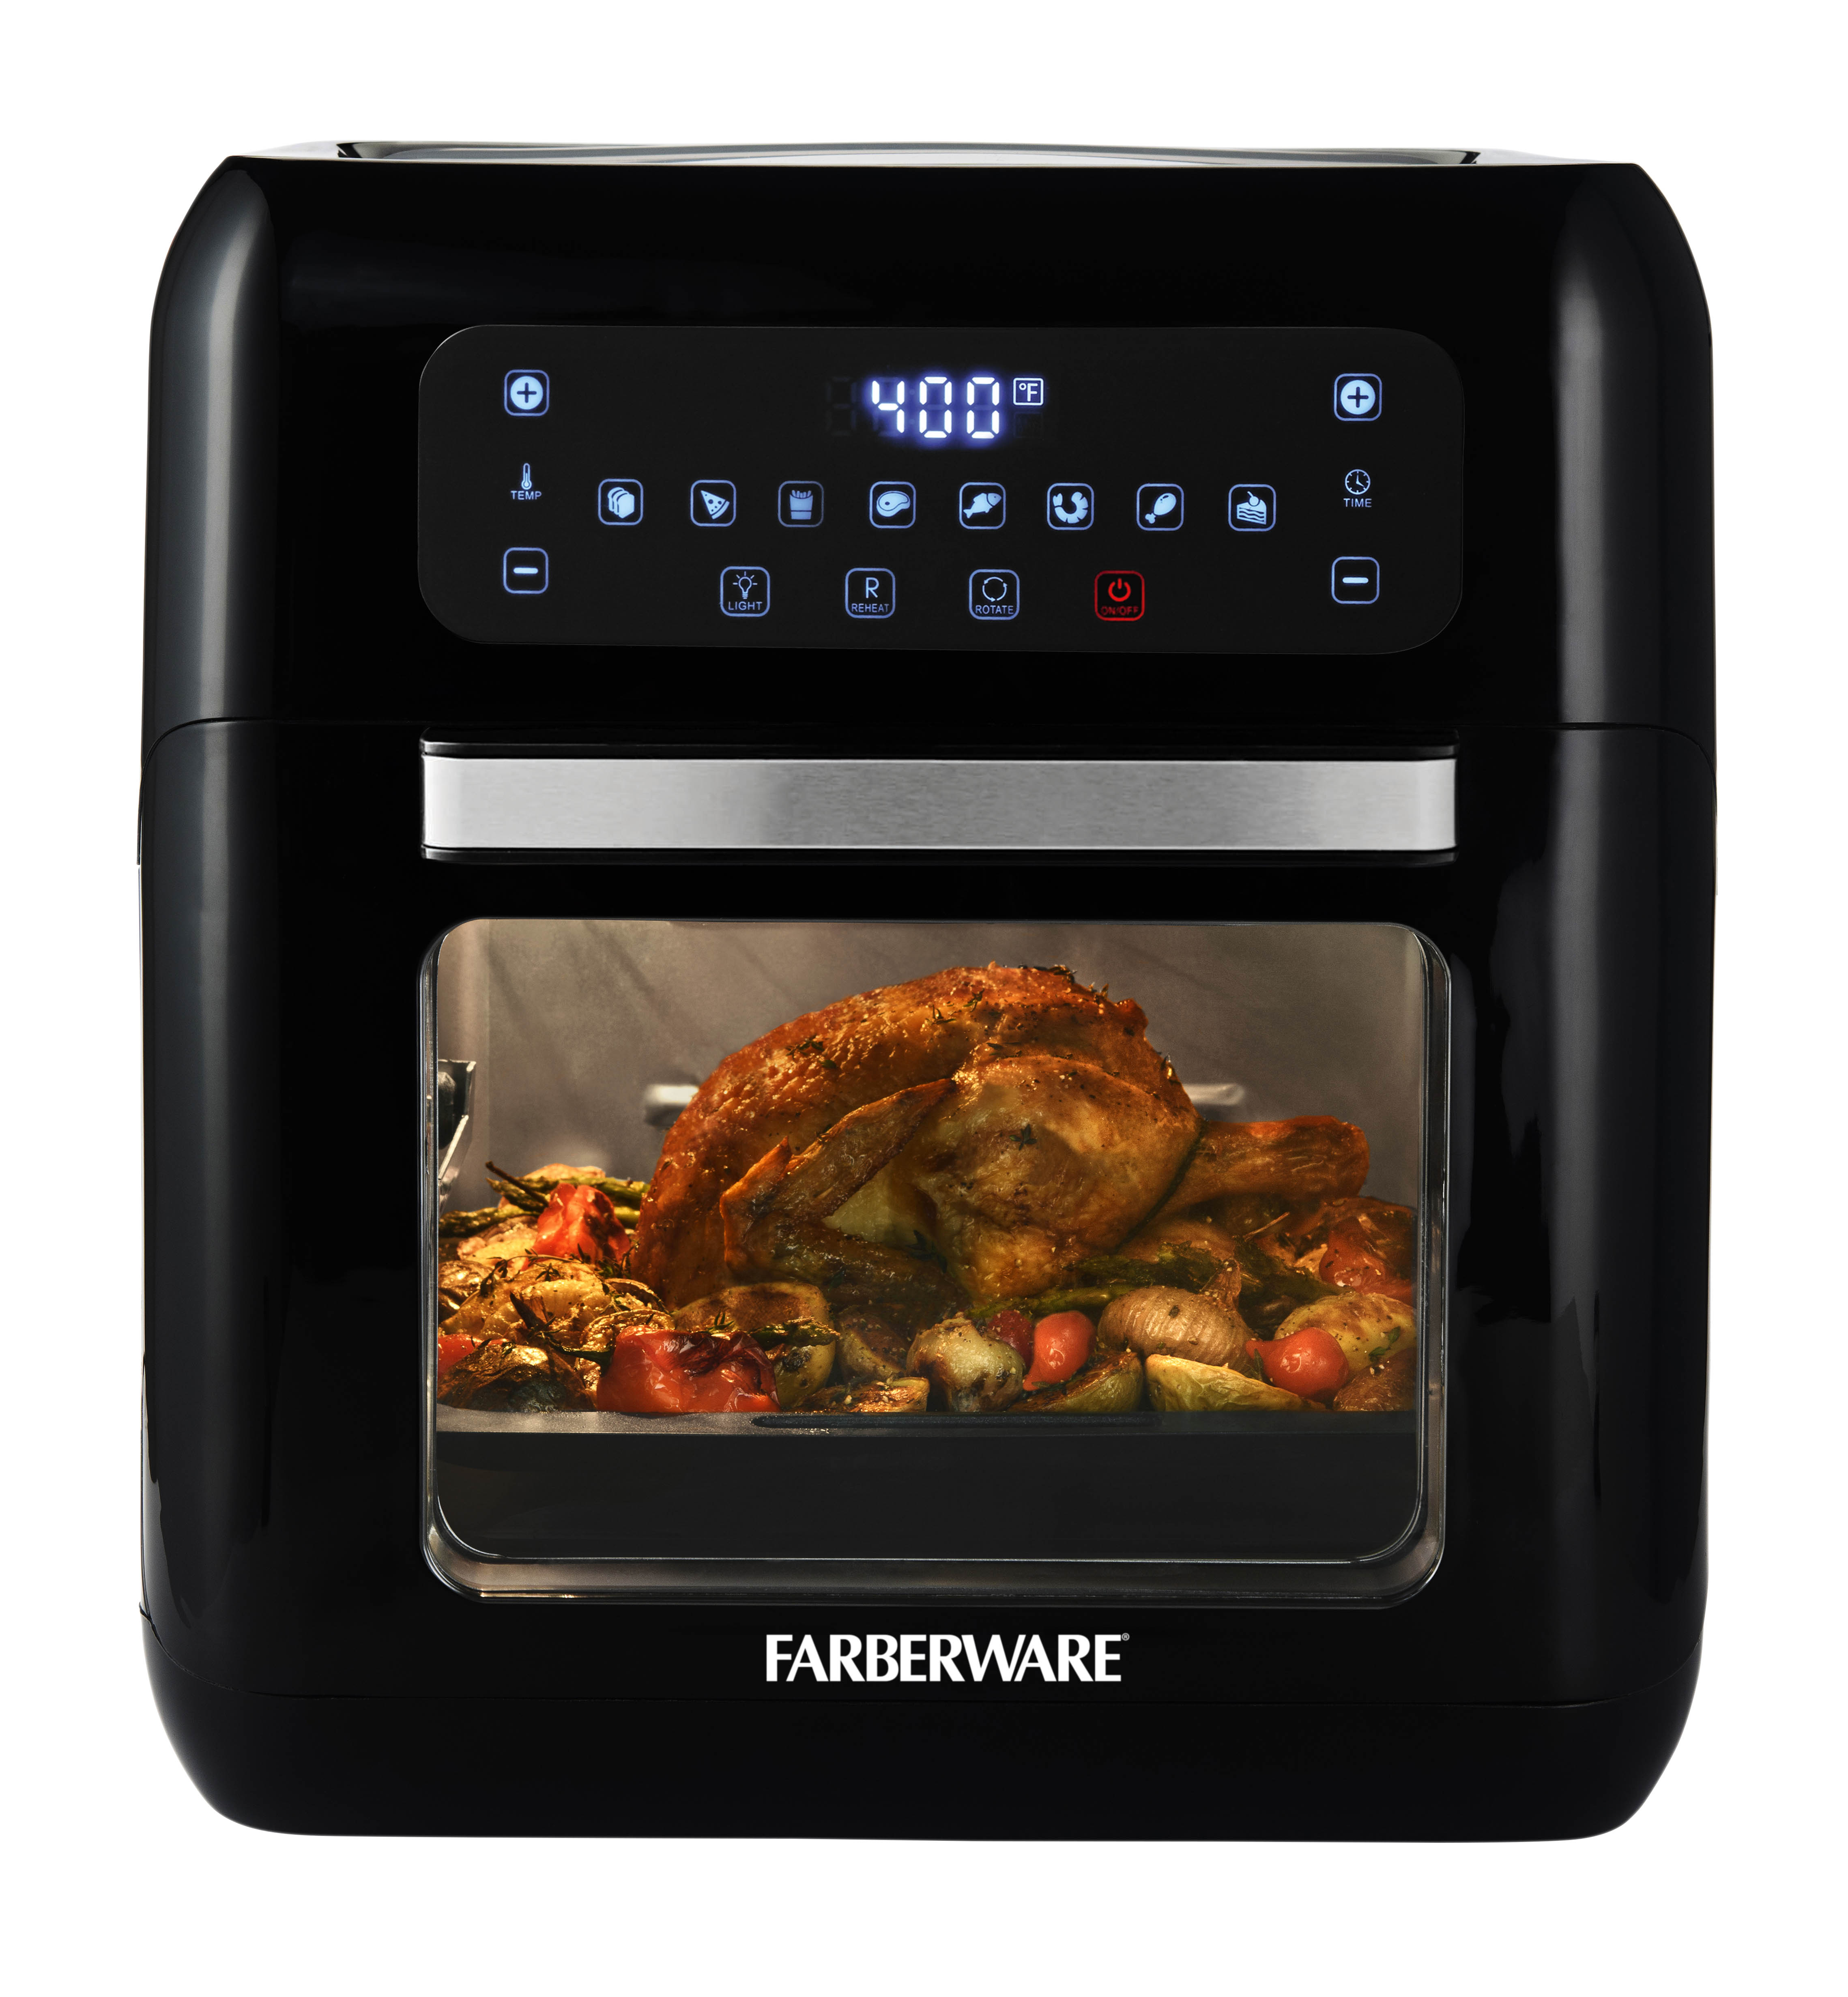 Farberware 6-Quart Digital XL Air Fryer Oven, Black - image 4 of 5